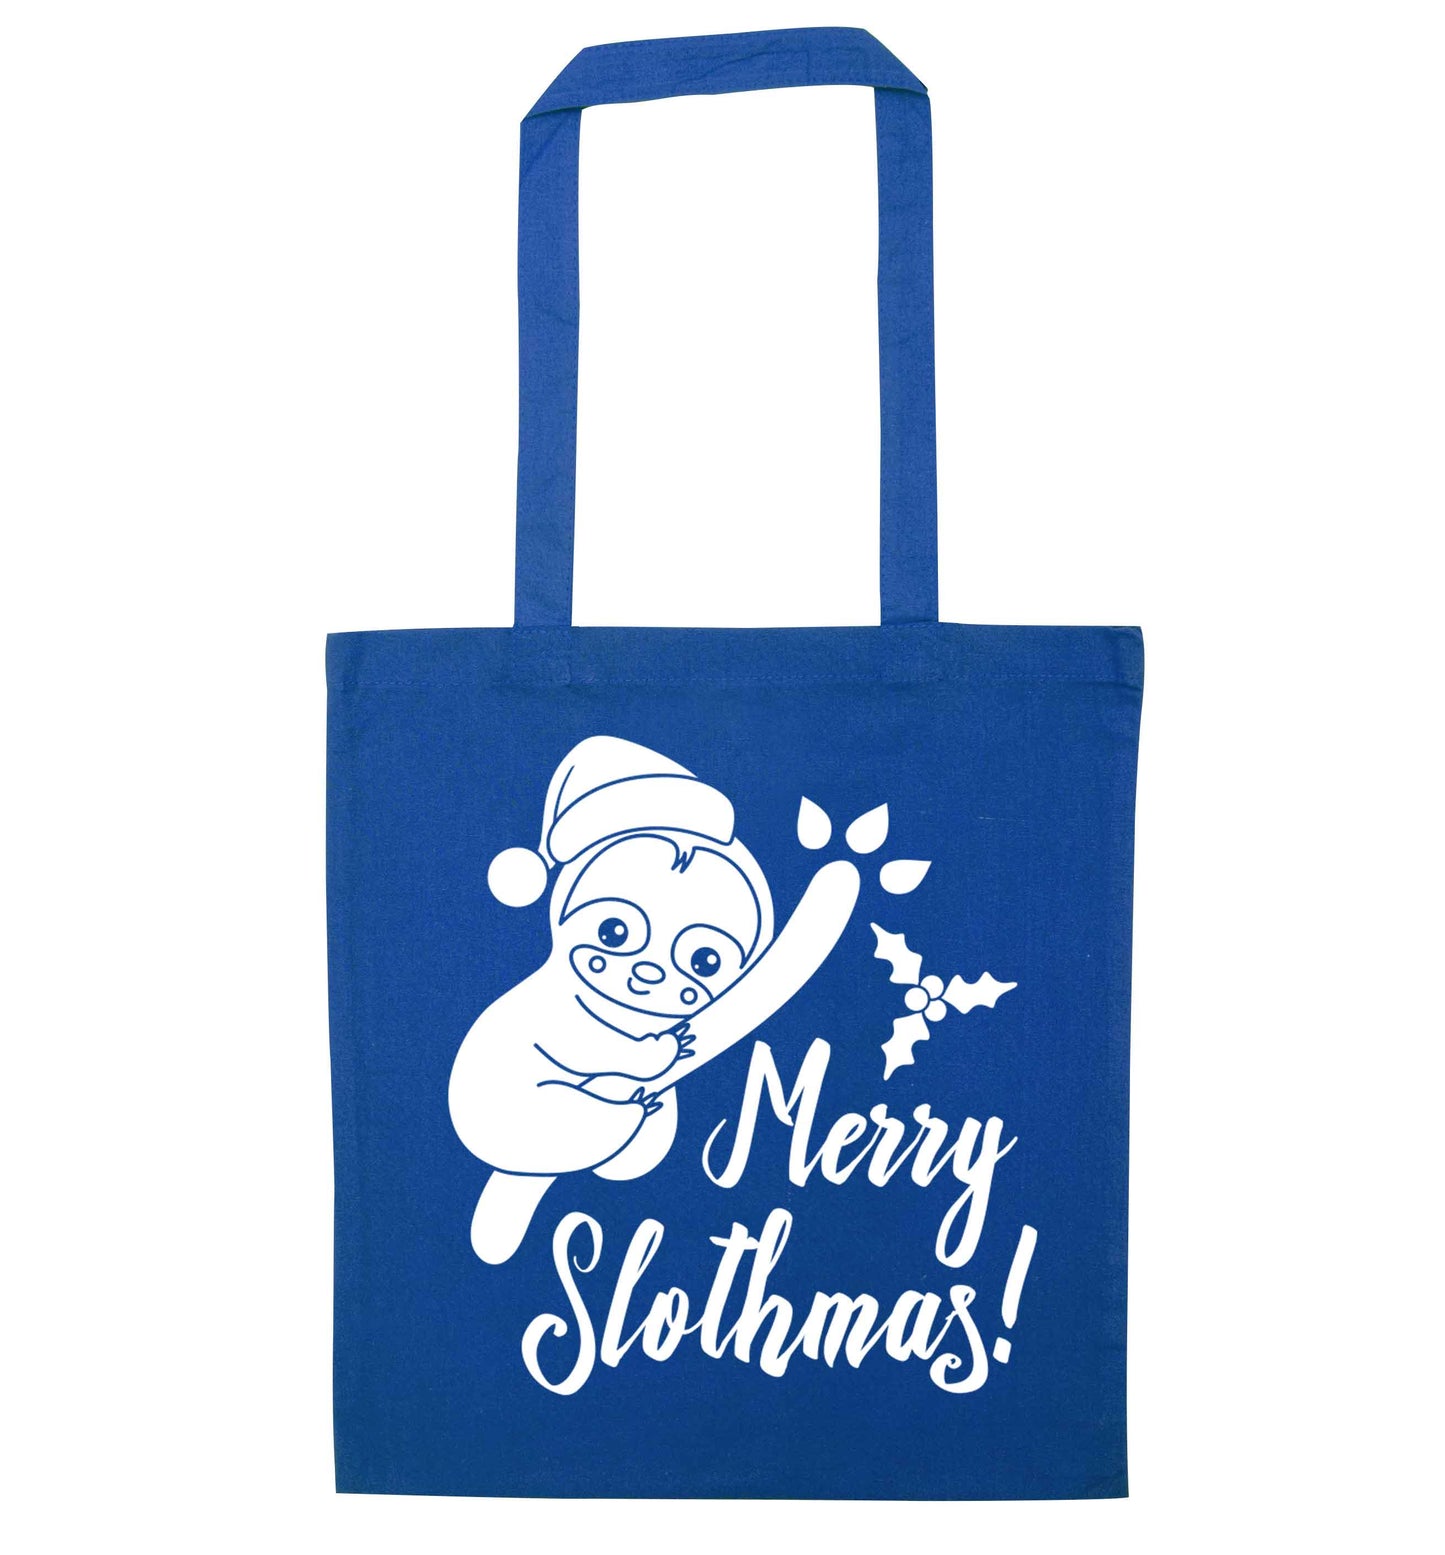 Merry Slothmas blue tote bag